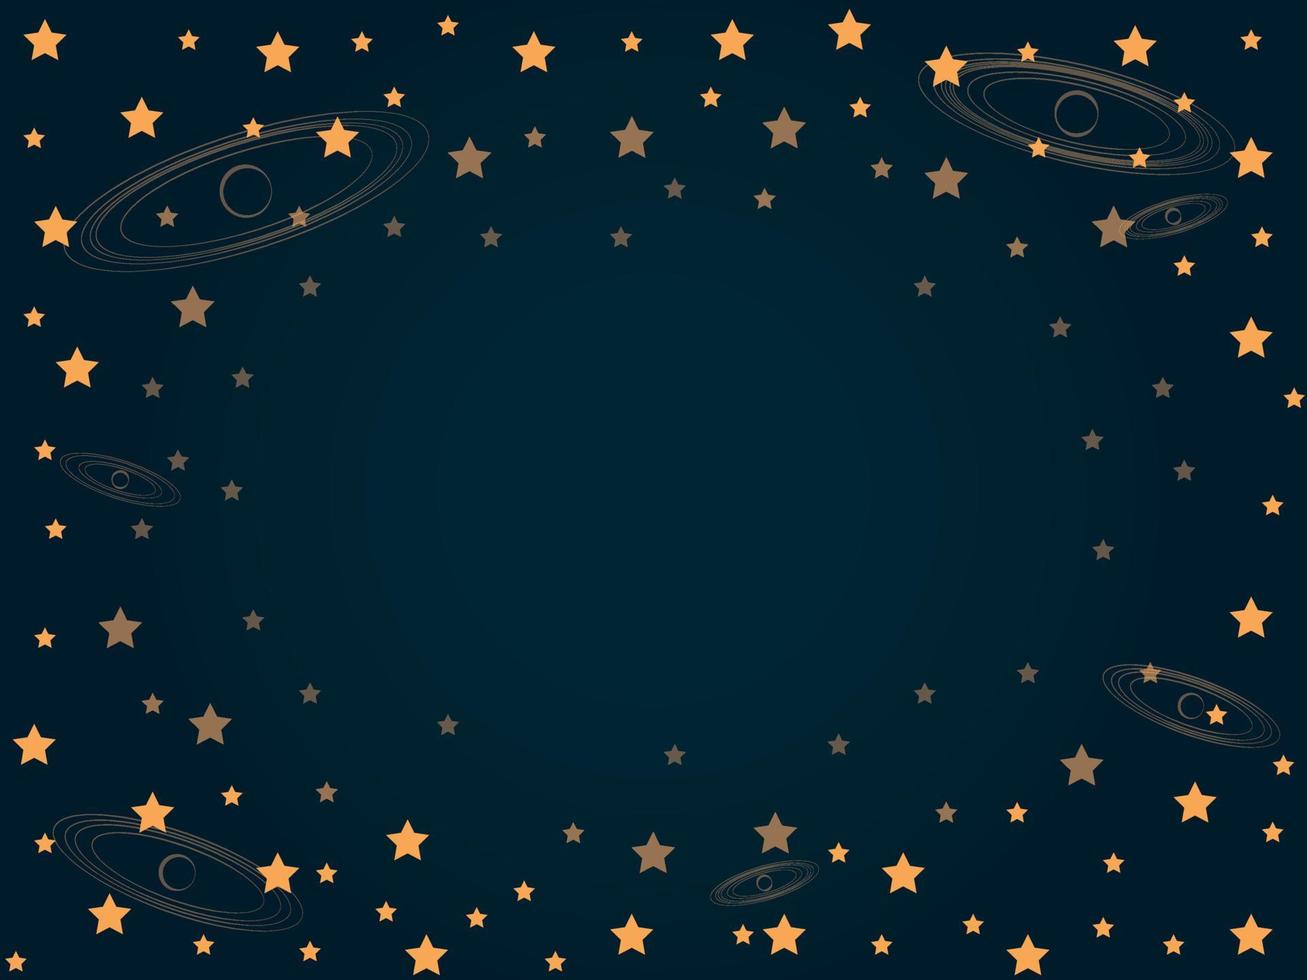 abstracte gouden ster hemelachtergrond met cirkelpatronen vectorillustratie vector